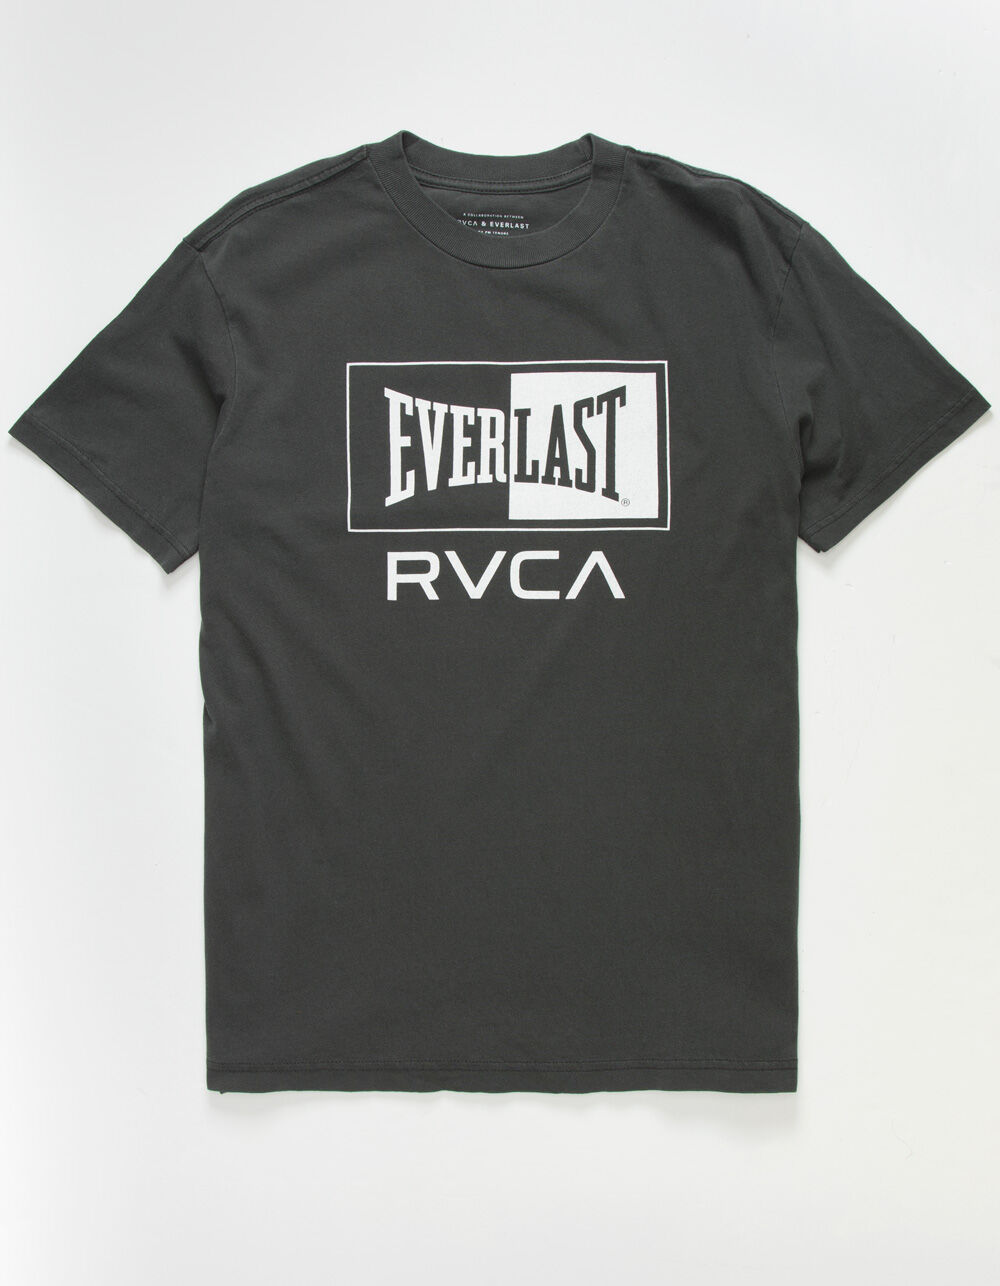 Everlast x RVCA - Sweatshirt for Men